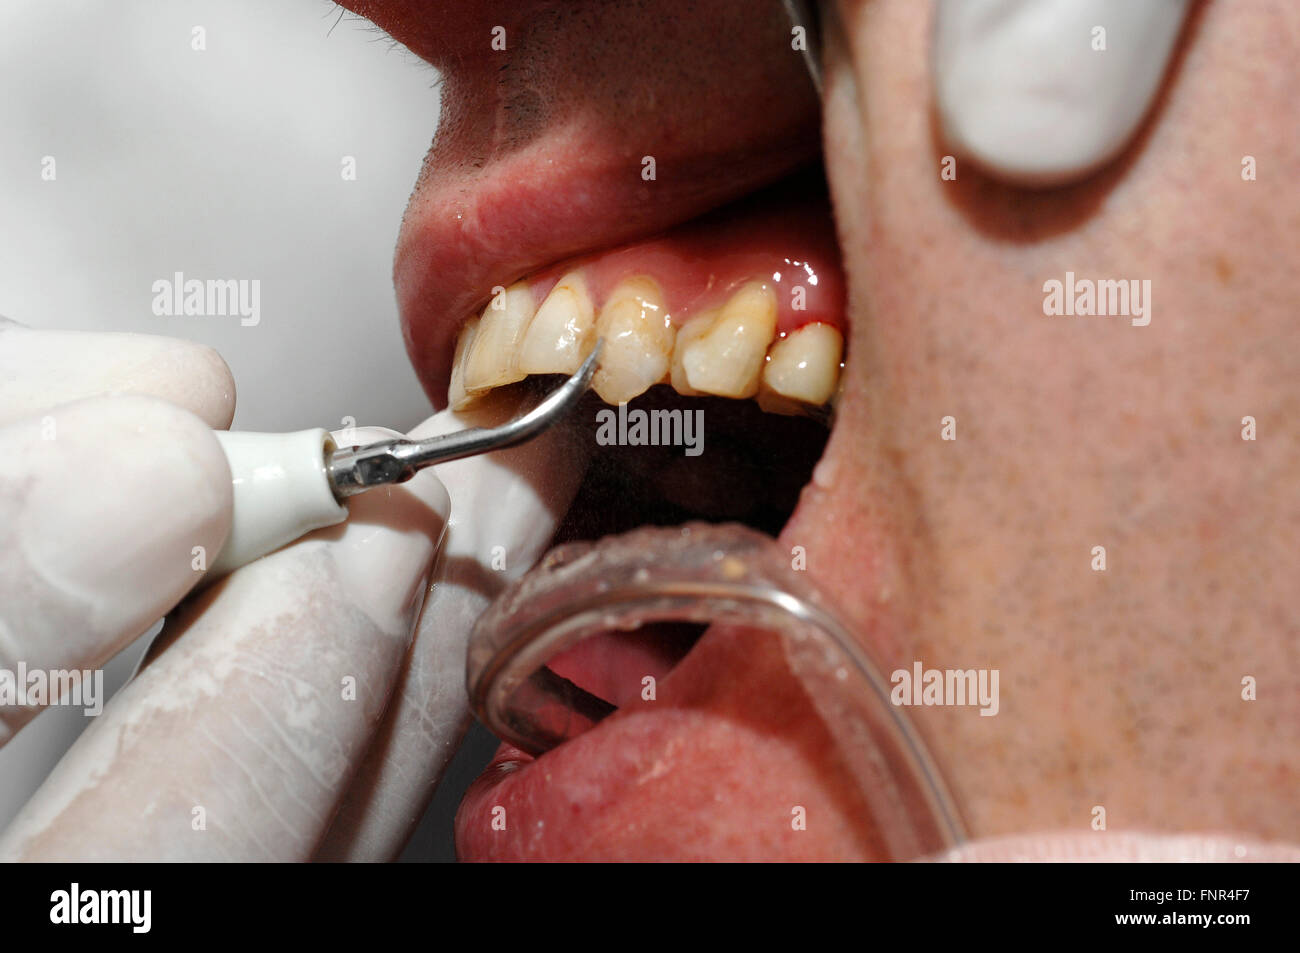 Denti tartaro immagini e fotografie stock ad alta risoluzione - Alamy